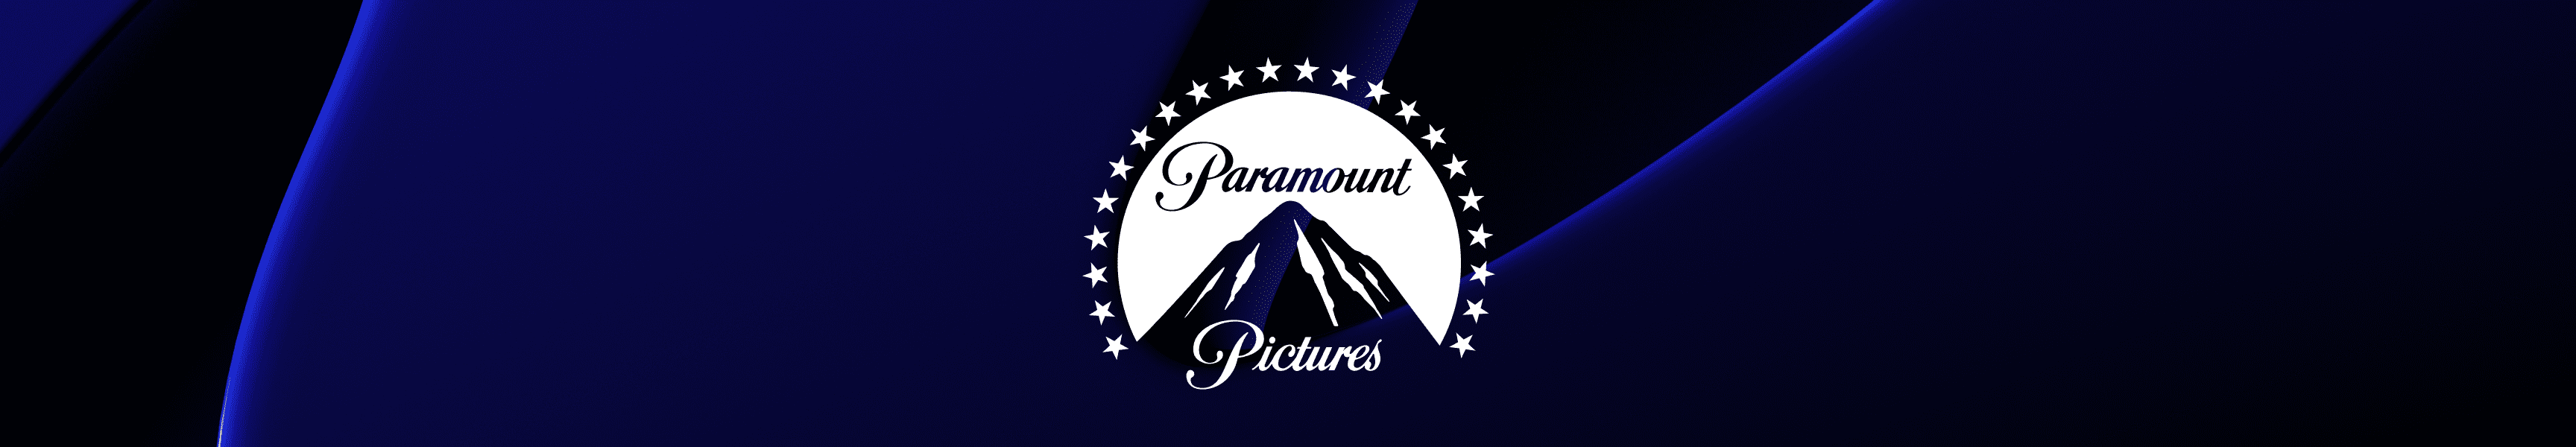 Paramount Pictures Sudaderas con y sin capucha